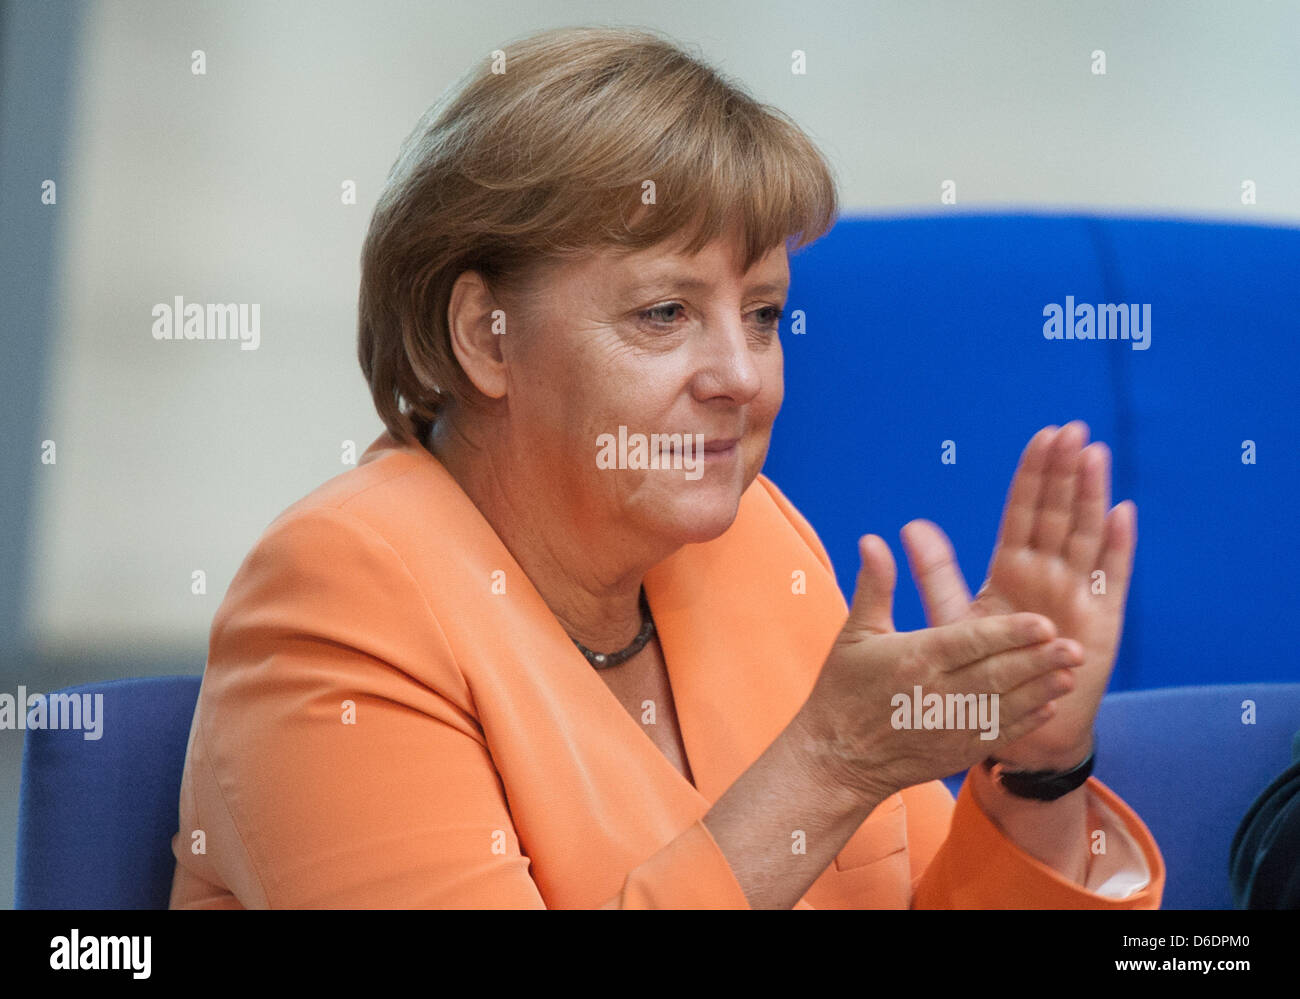 La chancelière allemande Angela Merkel participe à une réunion du budget semaine au Bundestag allemand à Berlin, Allemagne, 11 septembre 2012. Le parlement a commencé ses consultations sur le budget fédéral. Photo : MAURIZIO GAMBARINI Banque D'Images